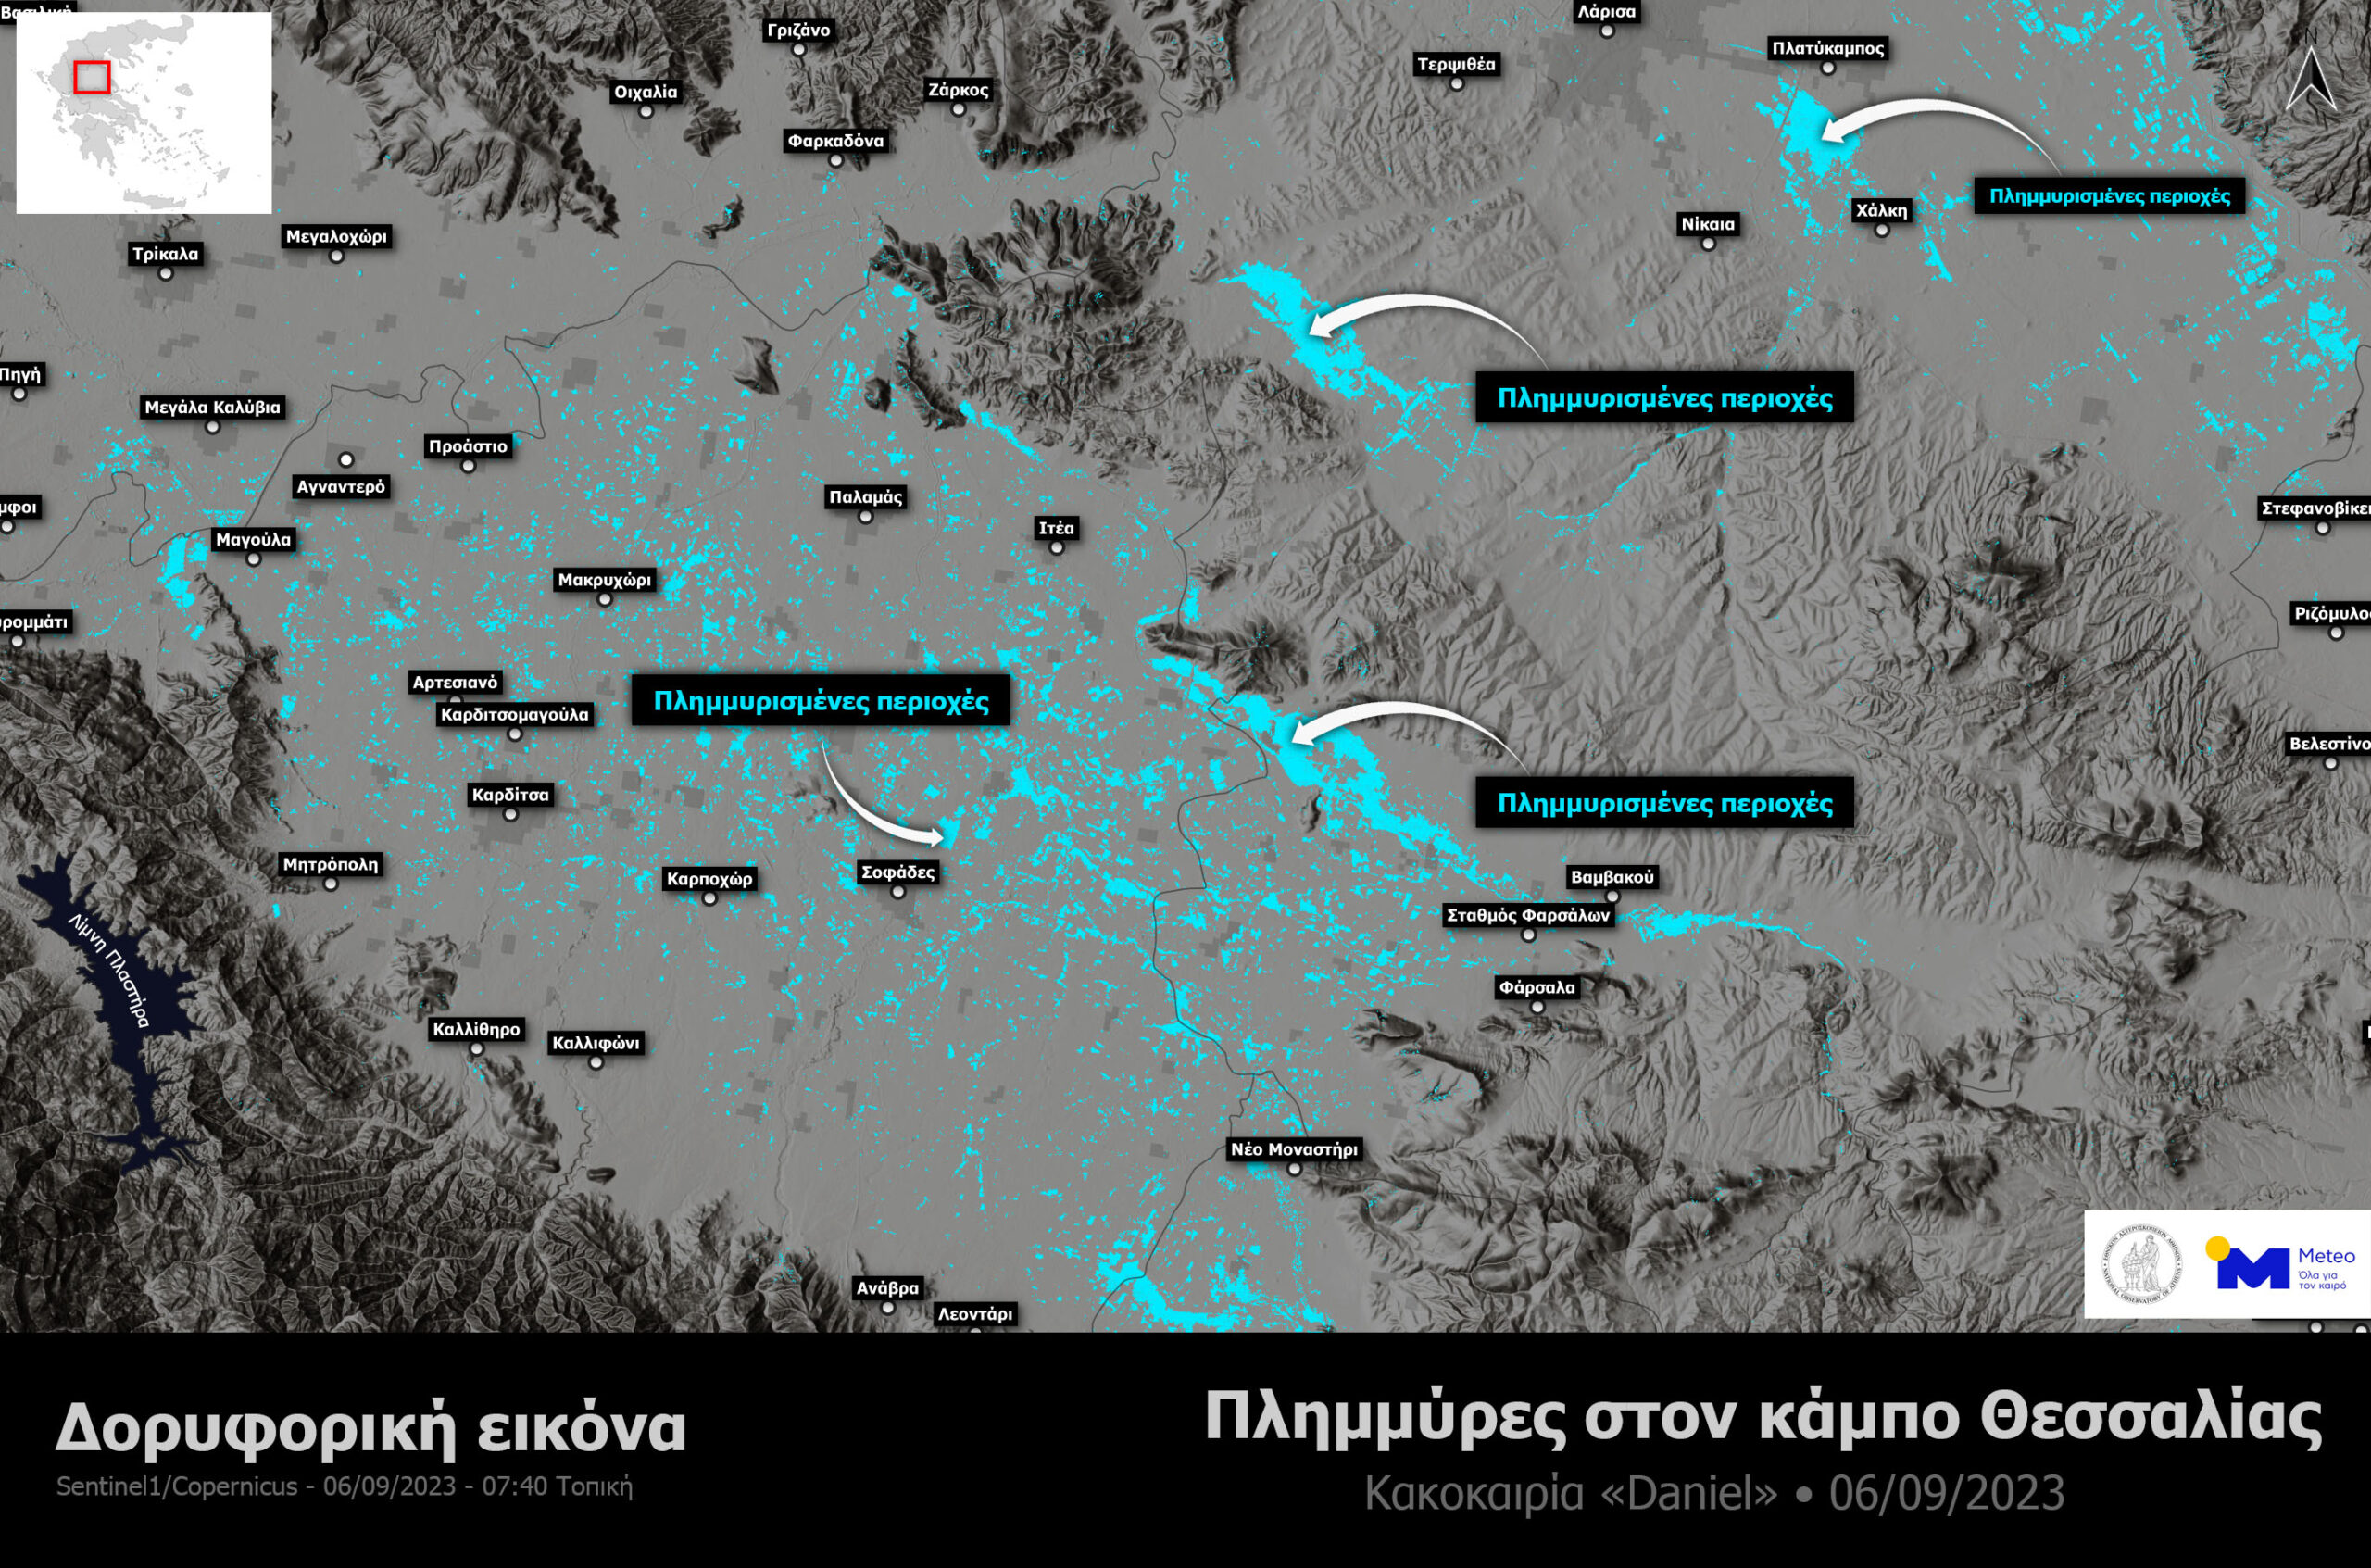 Κακοκαιρία Daniel: Πώς φαίνεται ο Θεσσαλικός κάμπος από δορυφόρο – Περίπου 720.000 στρέμματα οι πλημμυρισμένες εκτάσεις